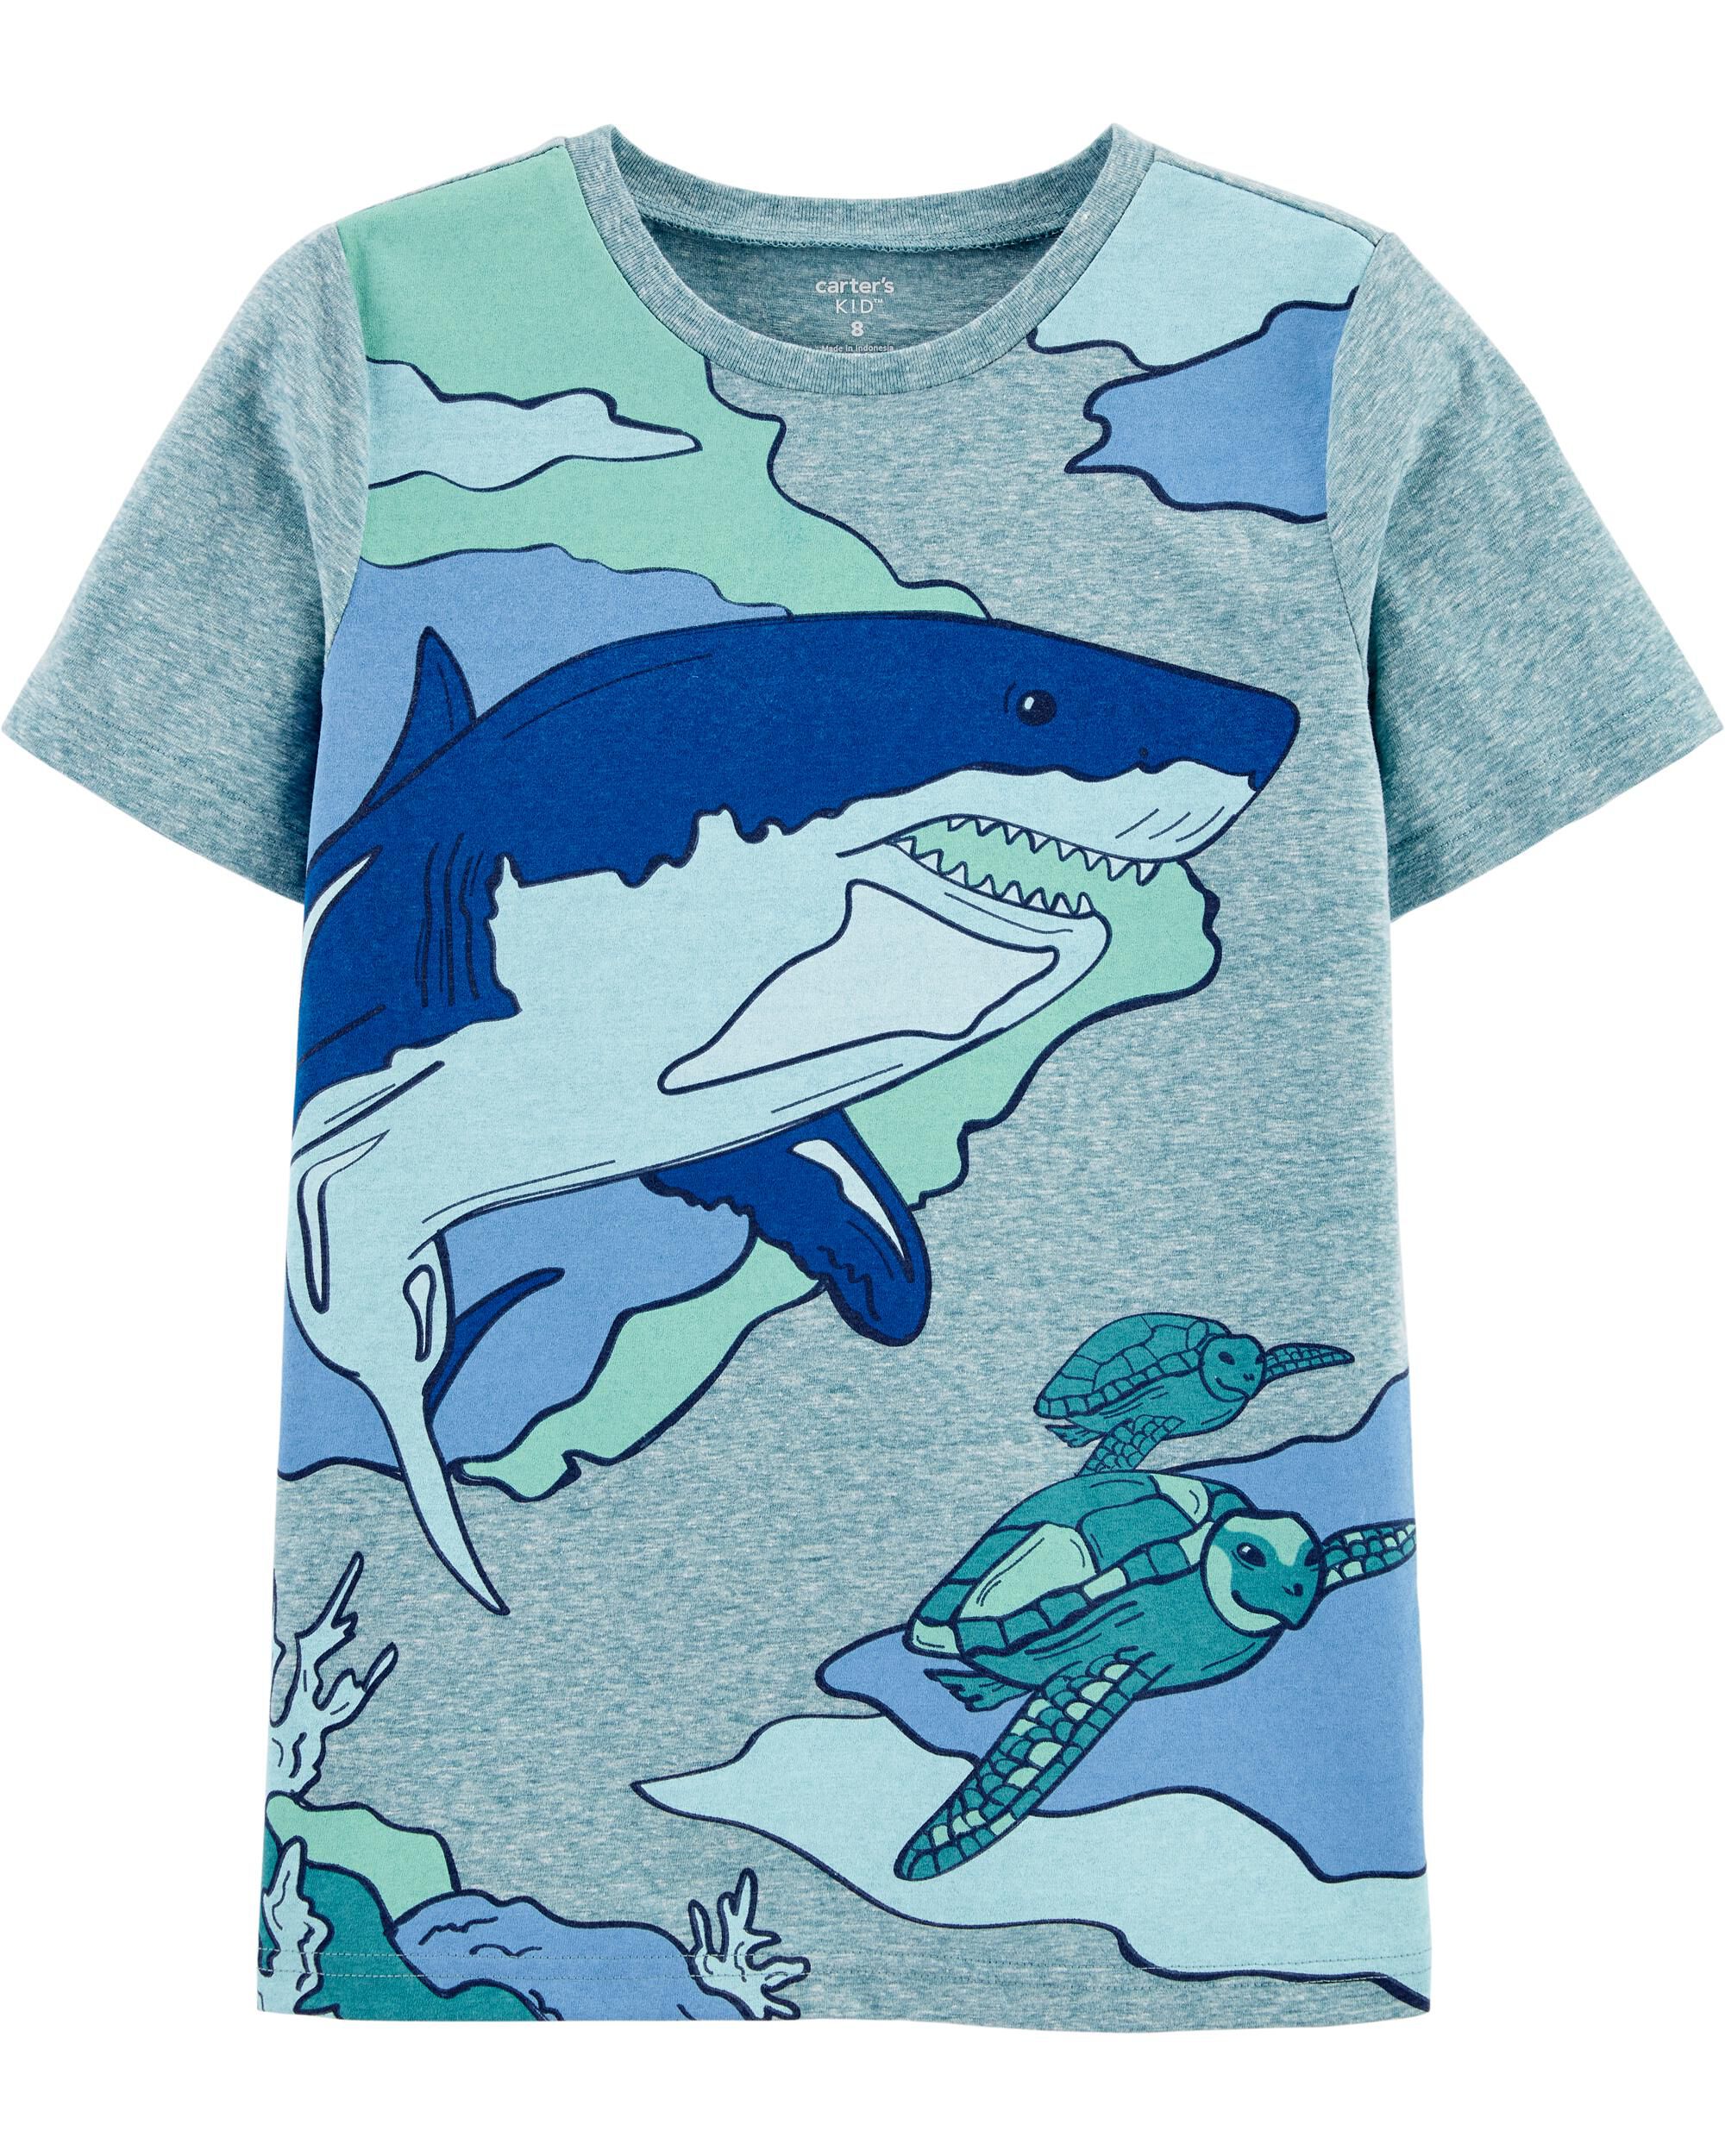 carters shark shirt